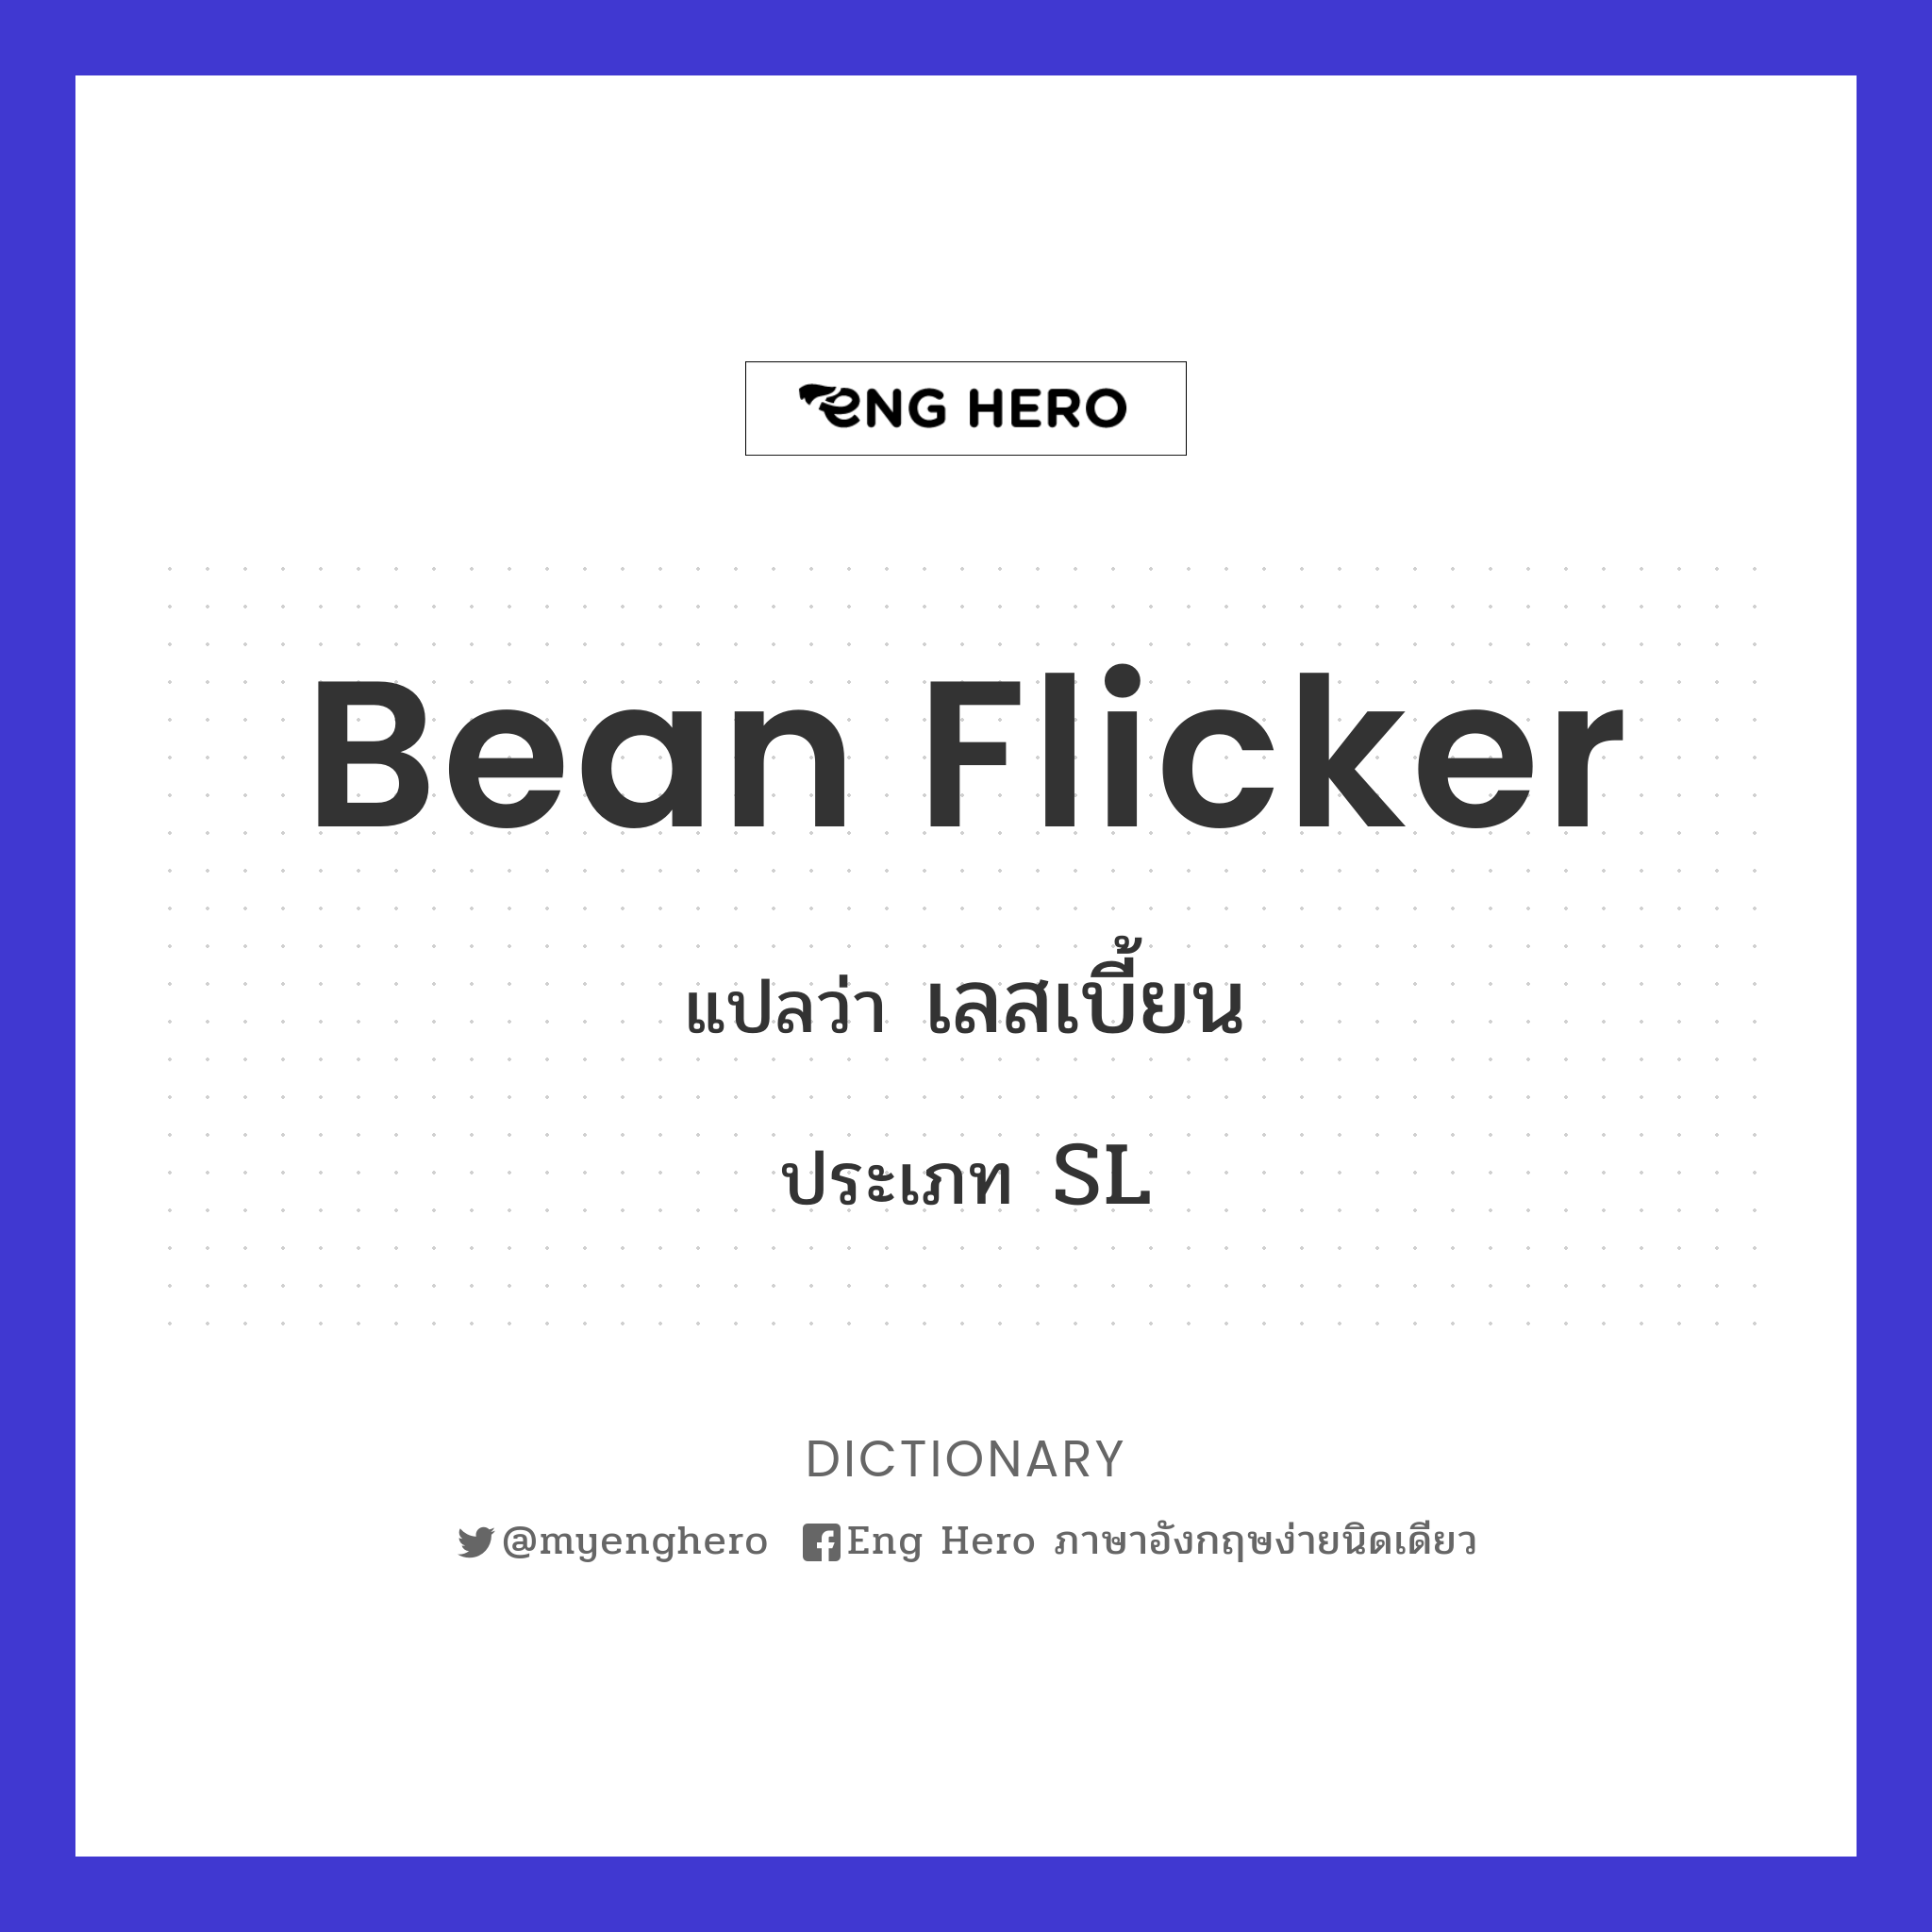 bean flicker